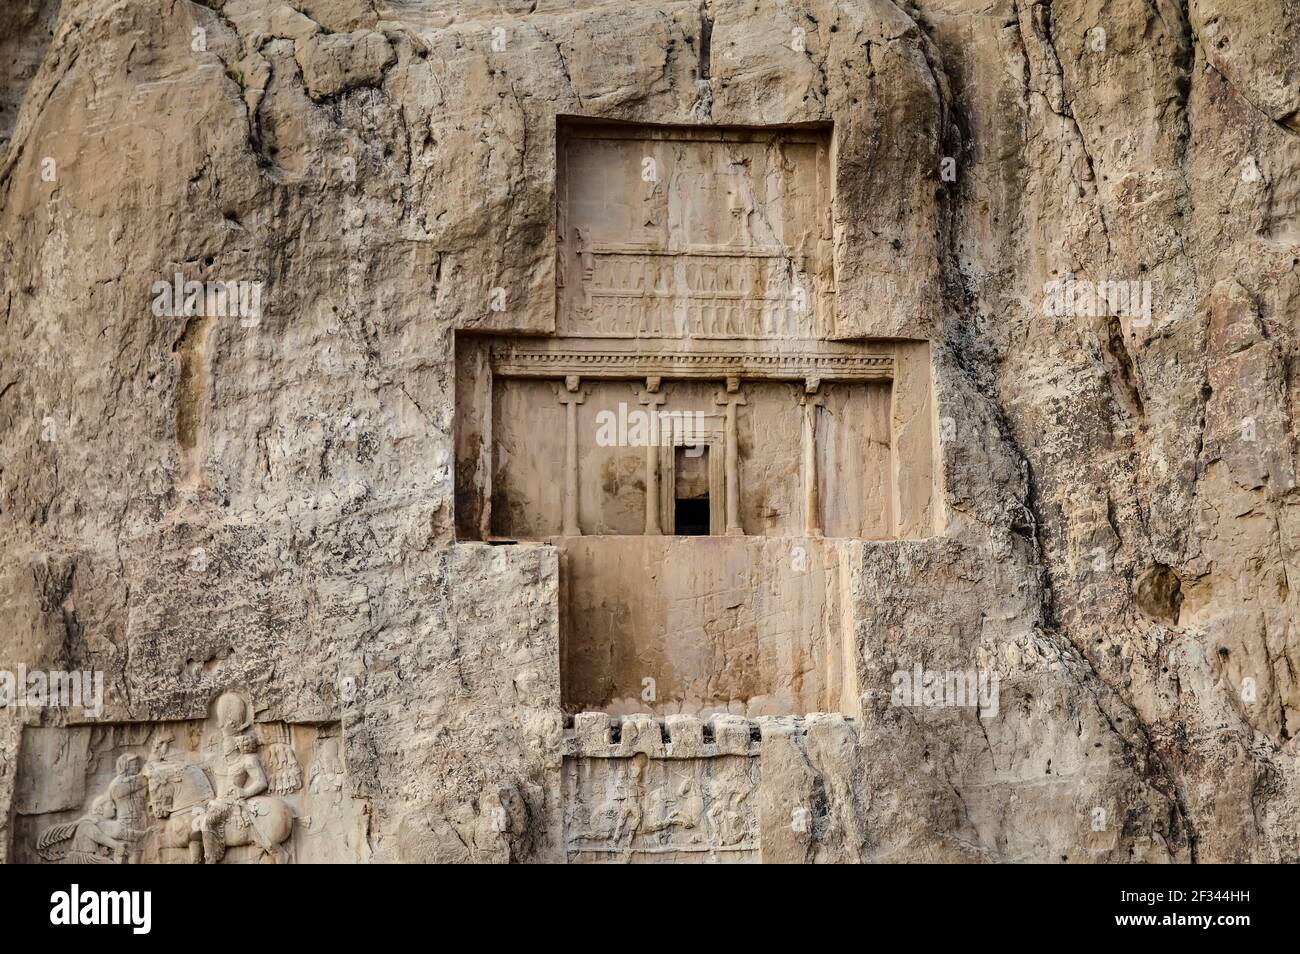 Das Grab von Darius I., bekannt als Darius der große, der dritte persische König der Könige des Achämeniden Reiches, befindet sich in Naqsh-e Rostam Nekropole Stockfoto